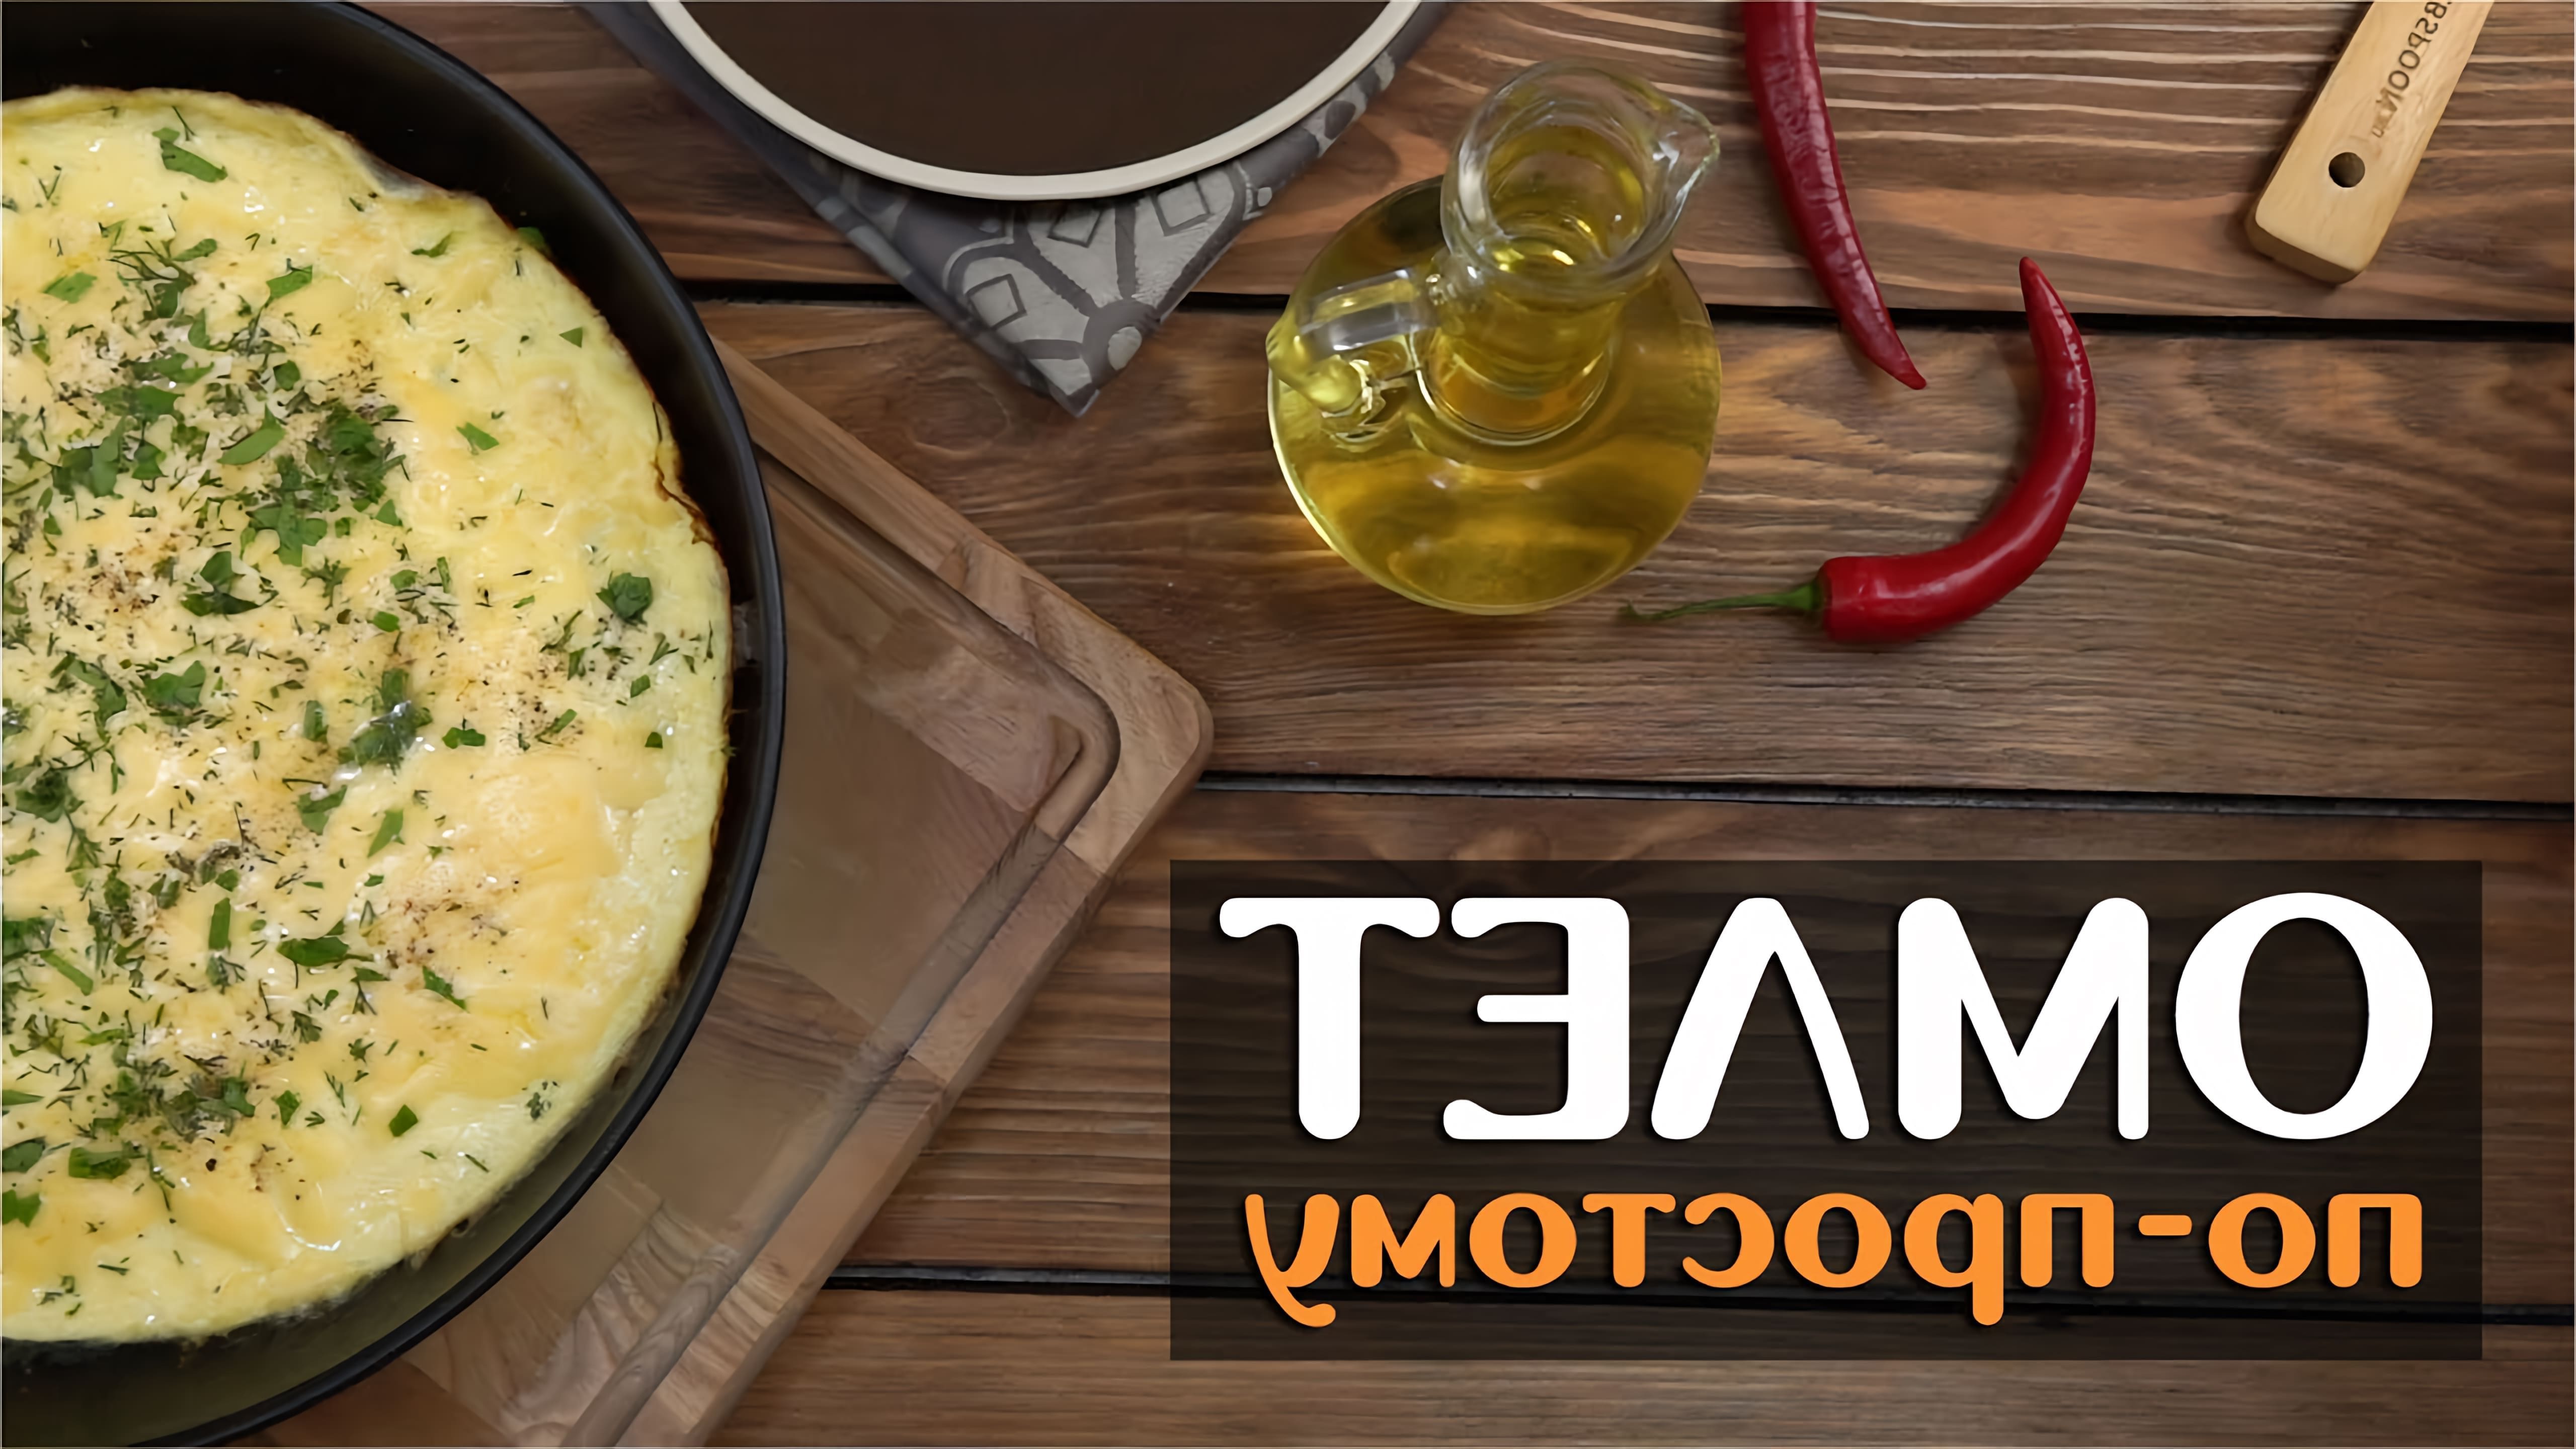 В этом видео-ролике будет показан очень простой и вкусный рецепт приготовления омлета на сковороде с молоком и сыром